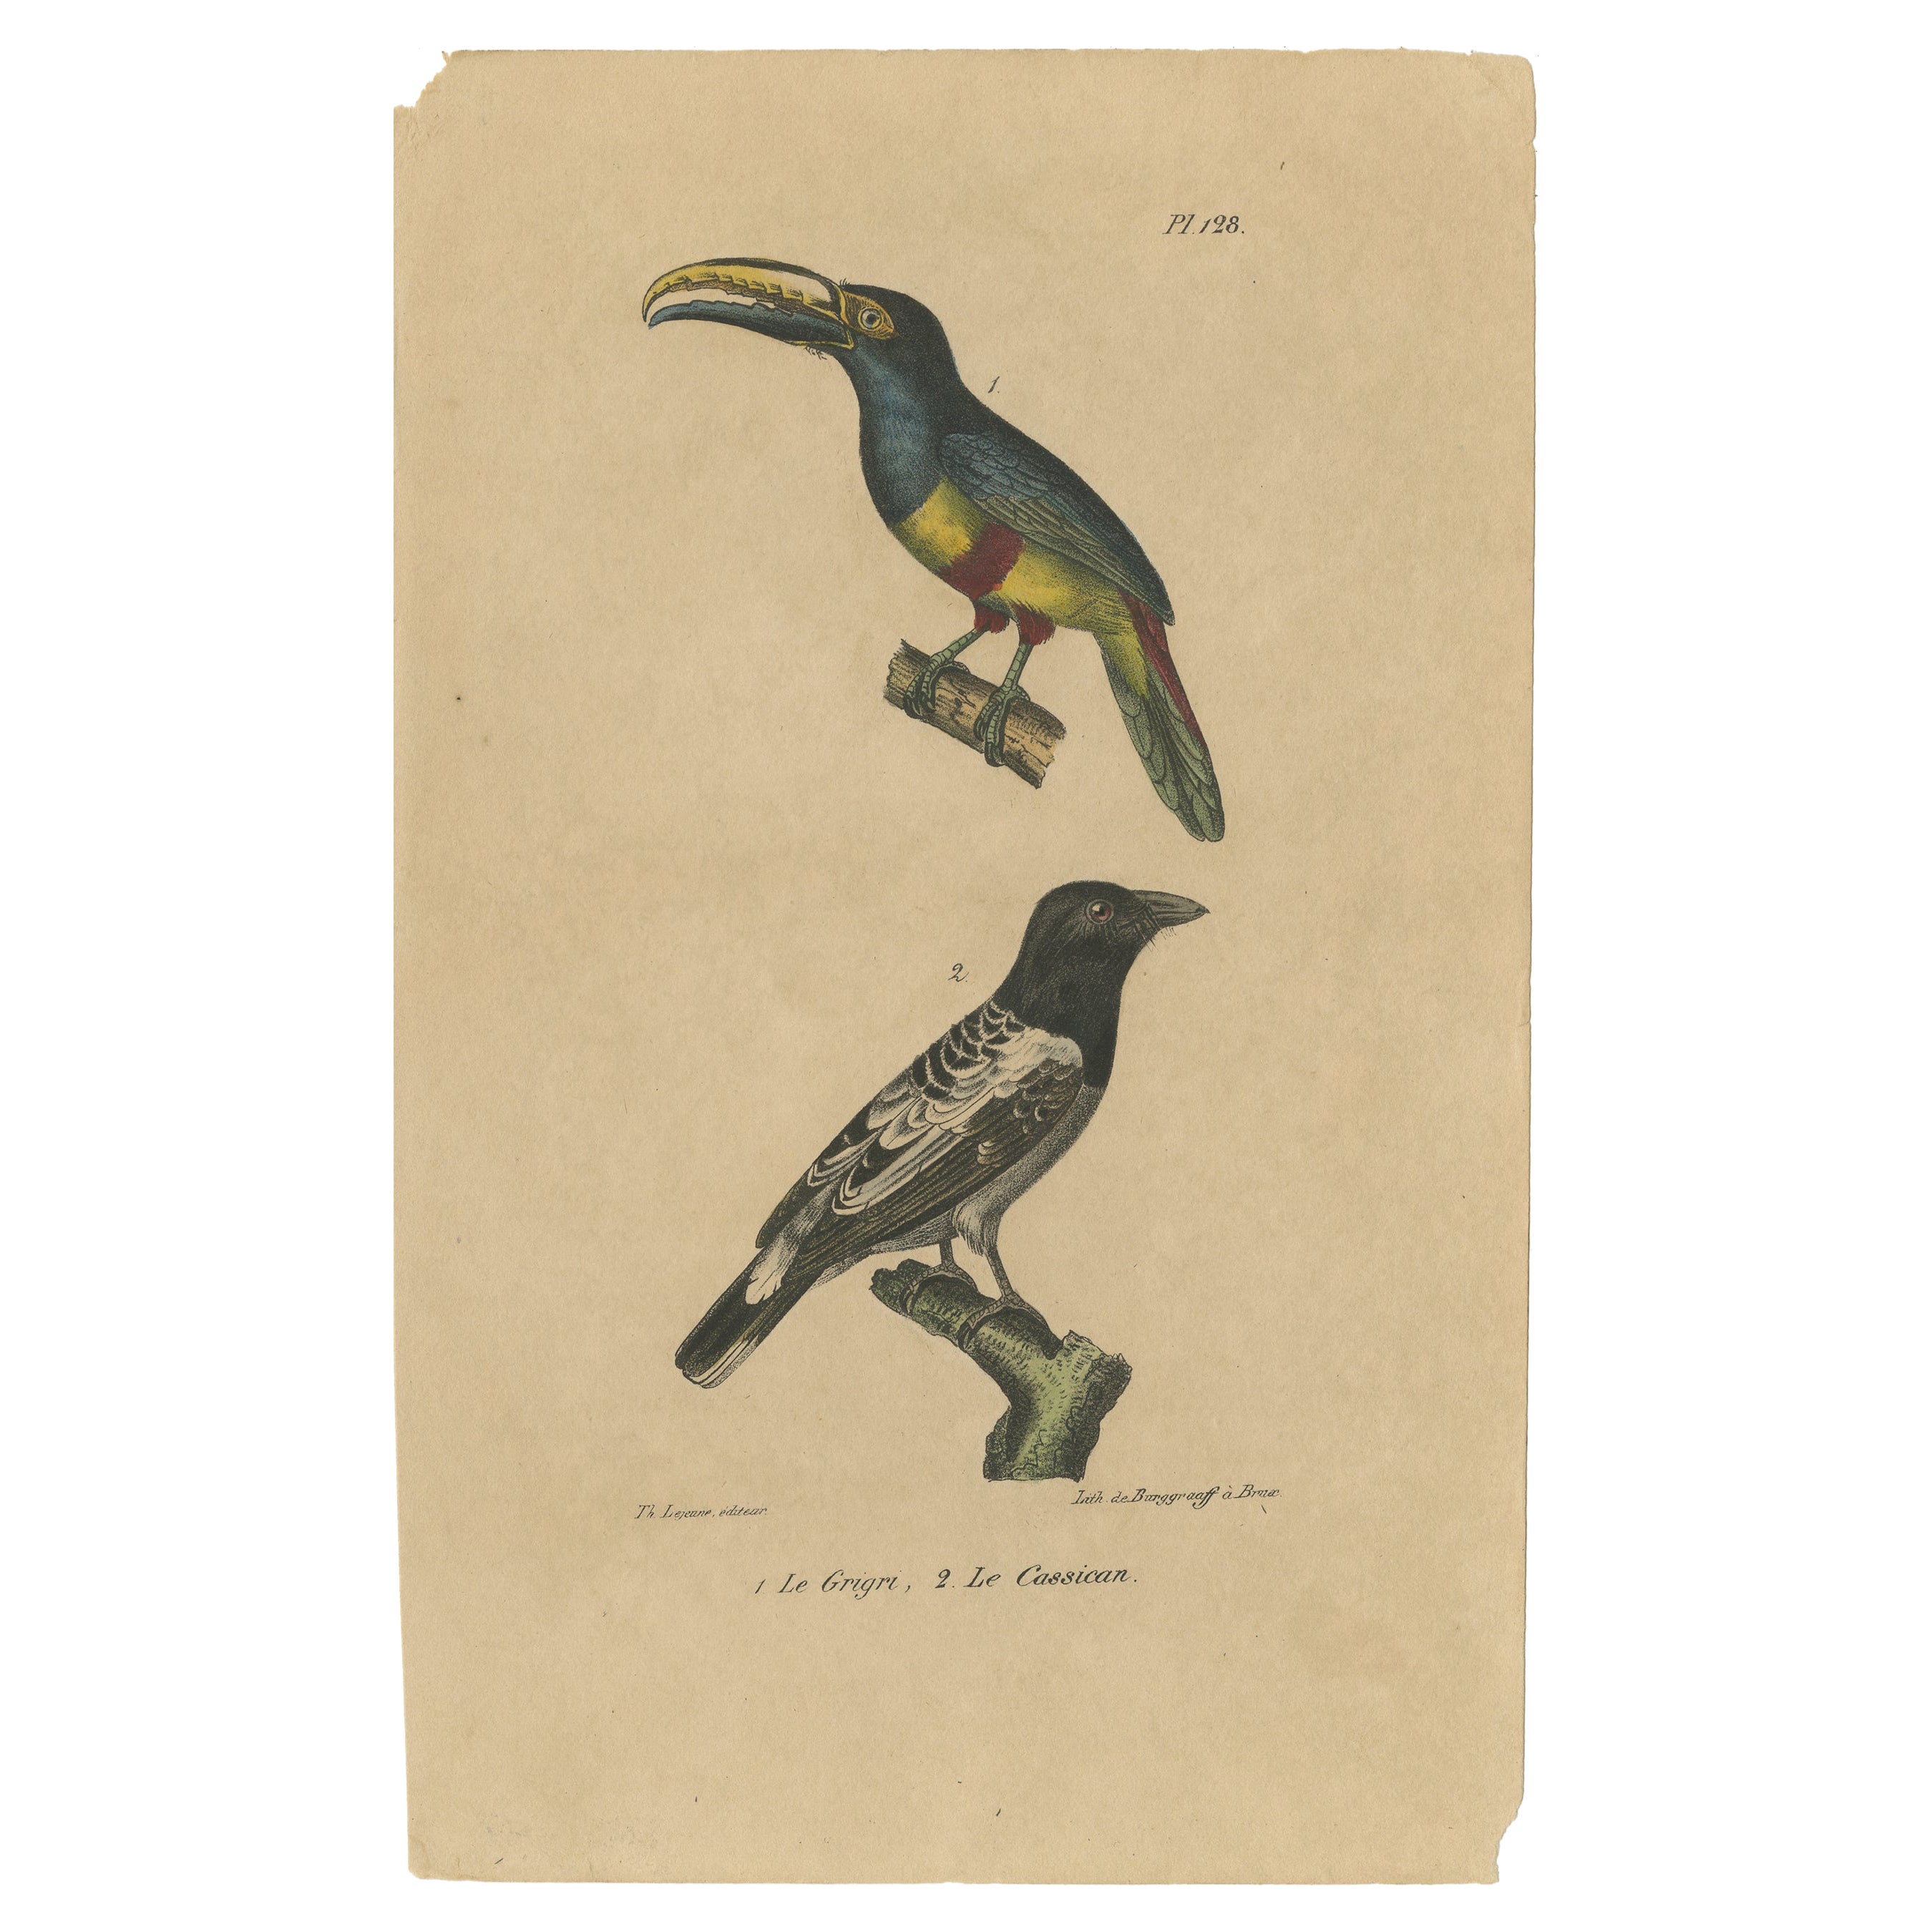 Tirage oiseau ancien d'un toucan Aracari et d'un magpie australien, vers 1830